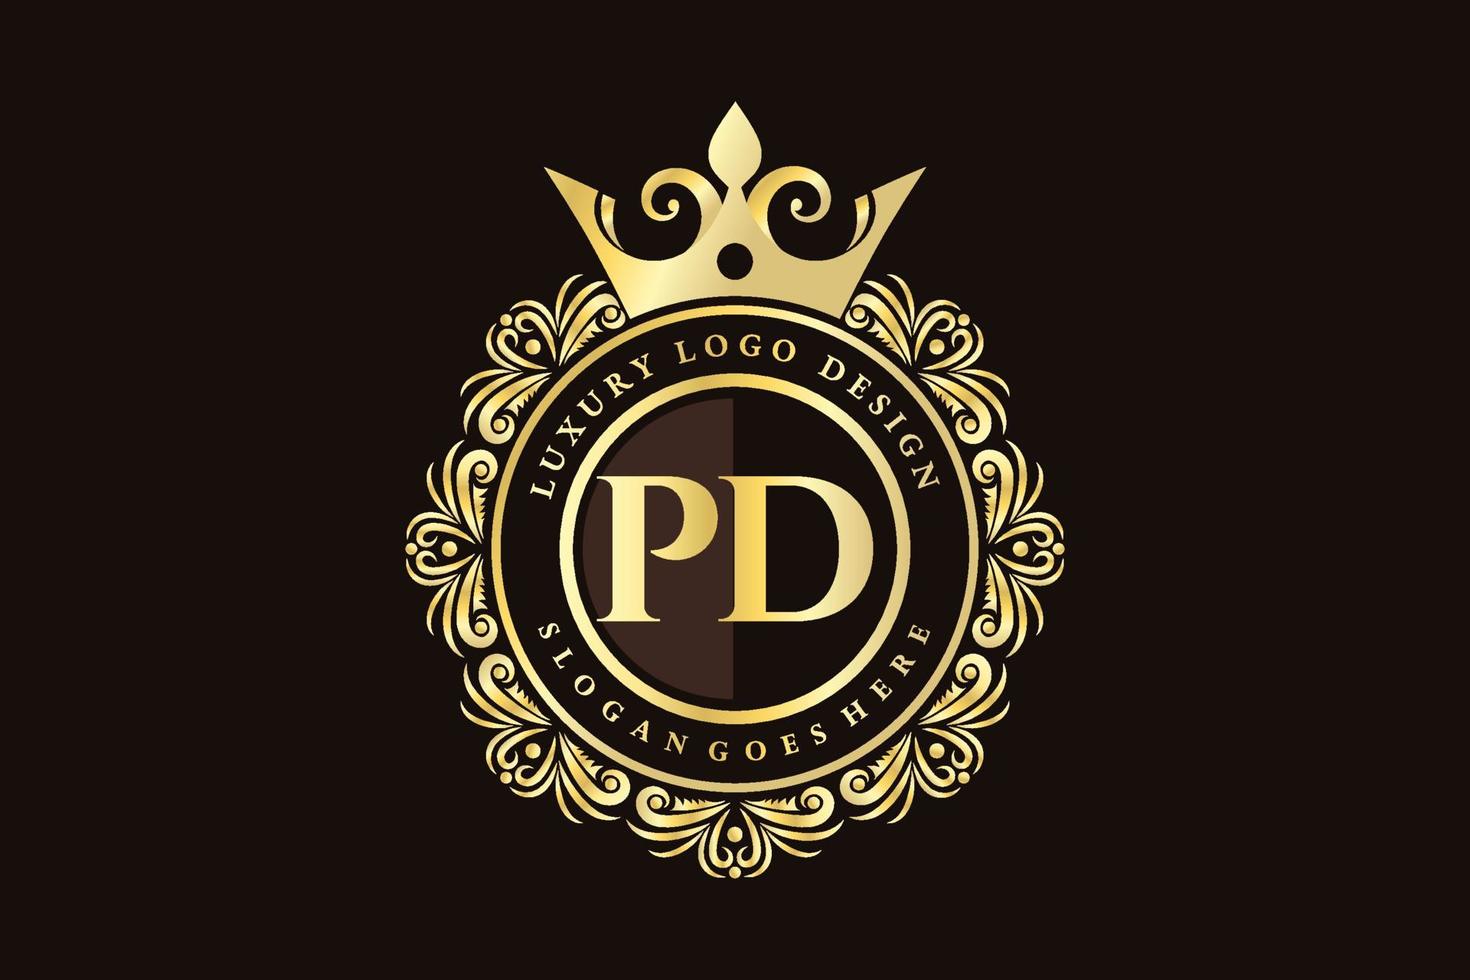 pd letra inicial oro caligráfico femenino floral dibujado a mano monograma heráldico antiguo estilo vintage lujo diseño de logotipo vector premium